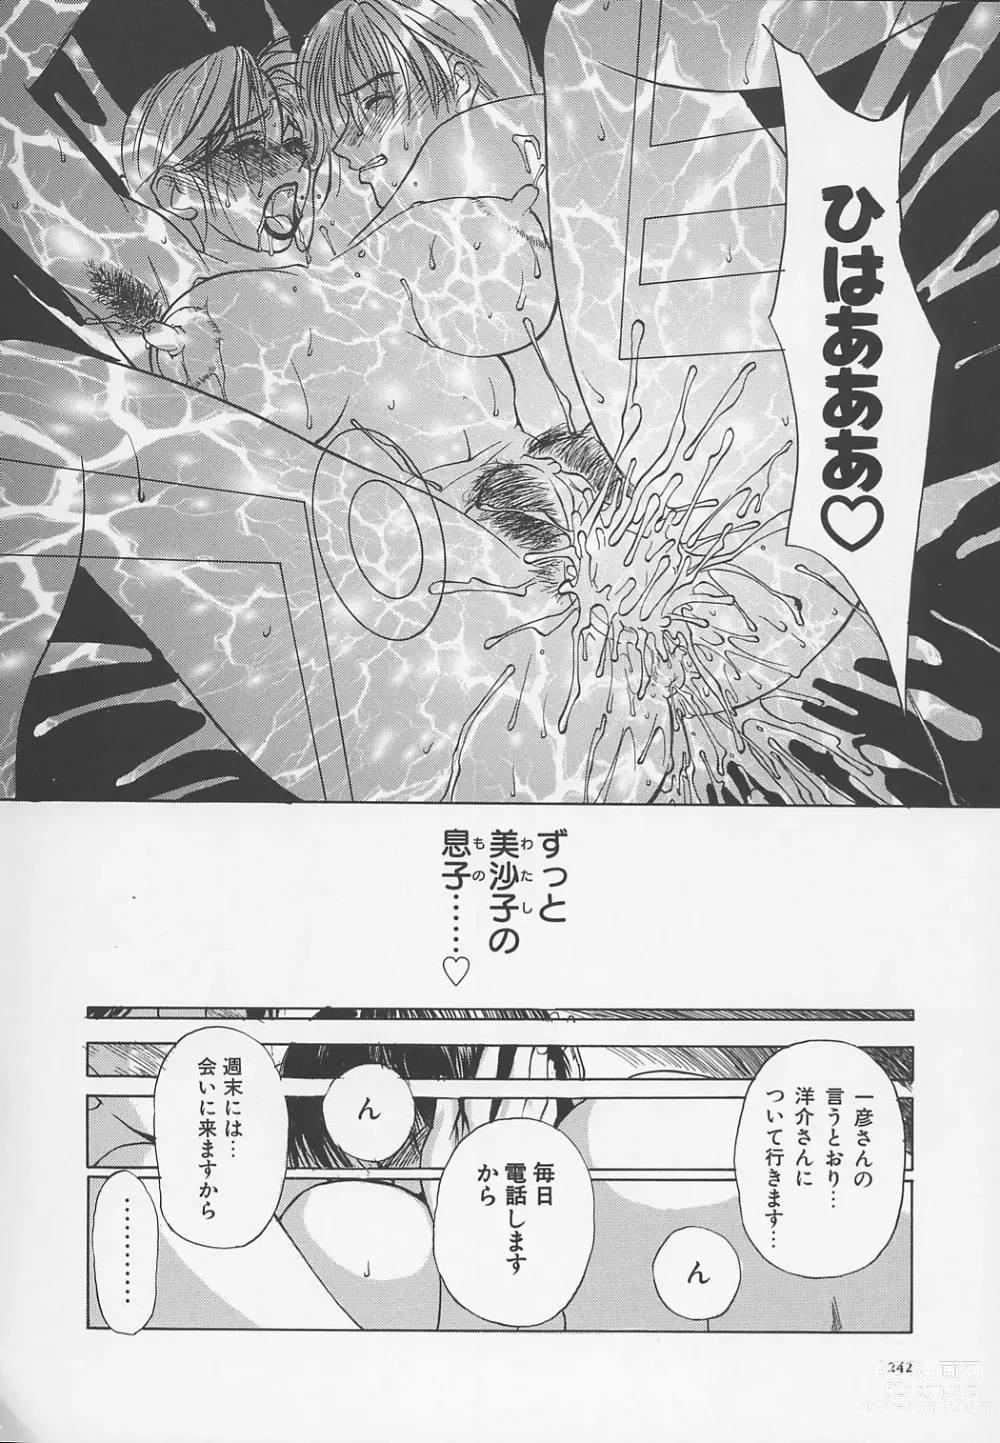 Page 245 of manga Enbo -Kanzenban-